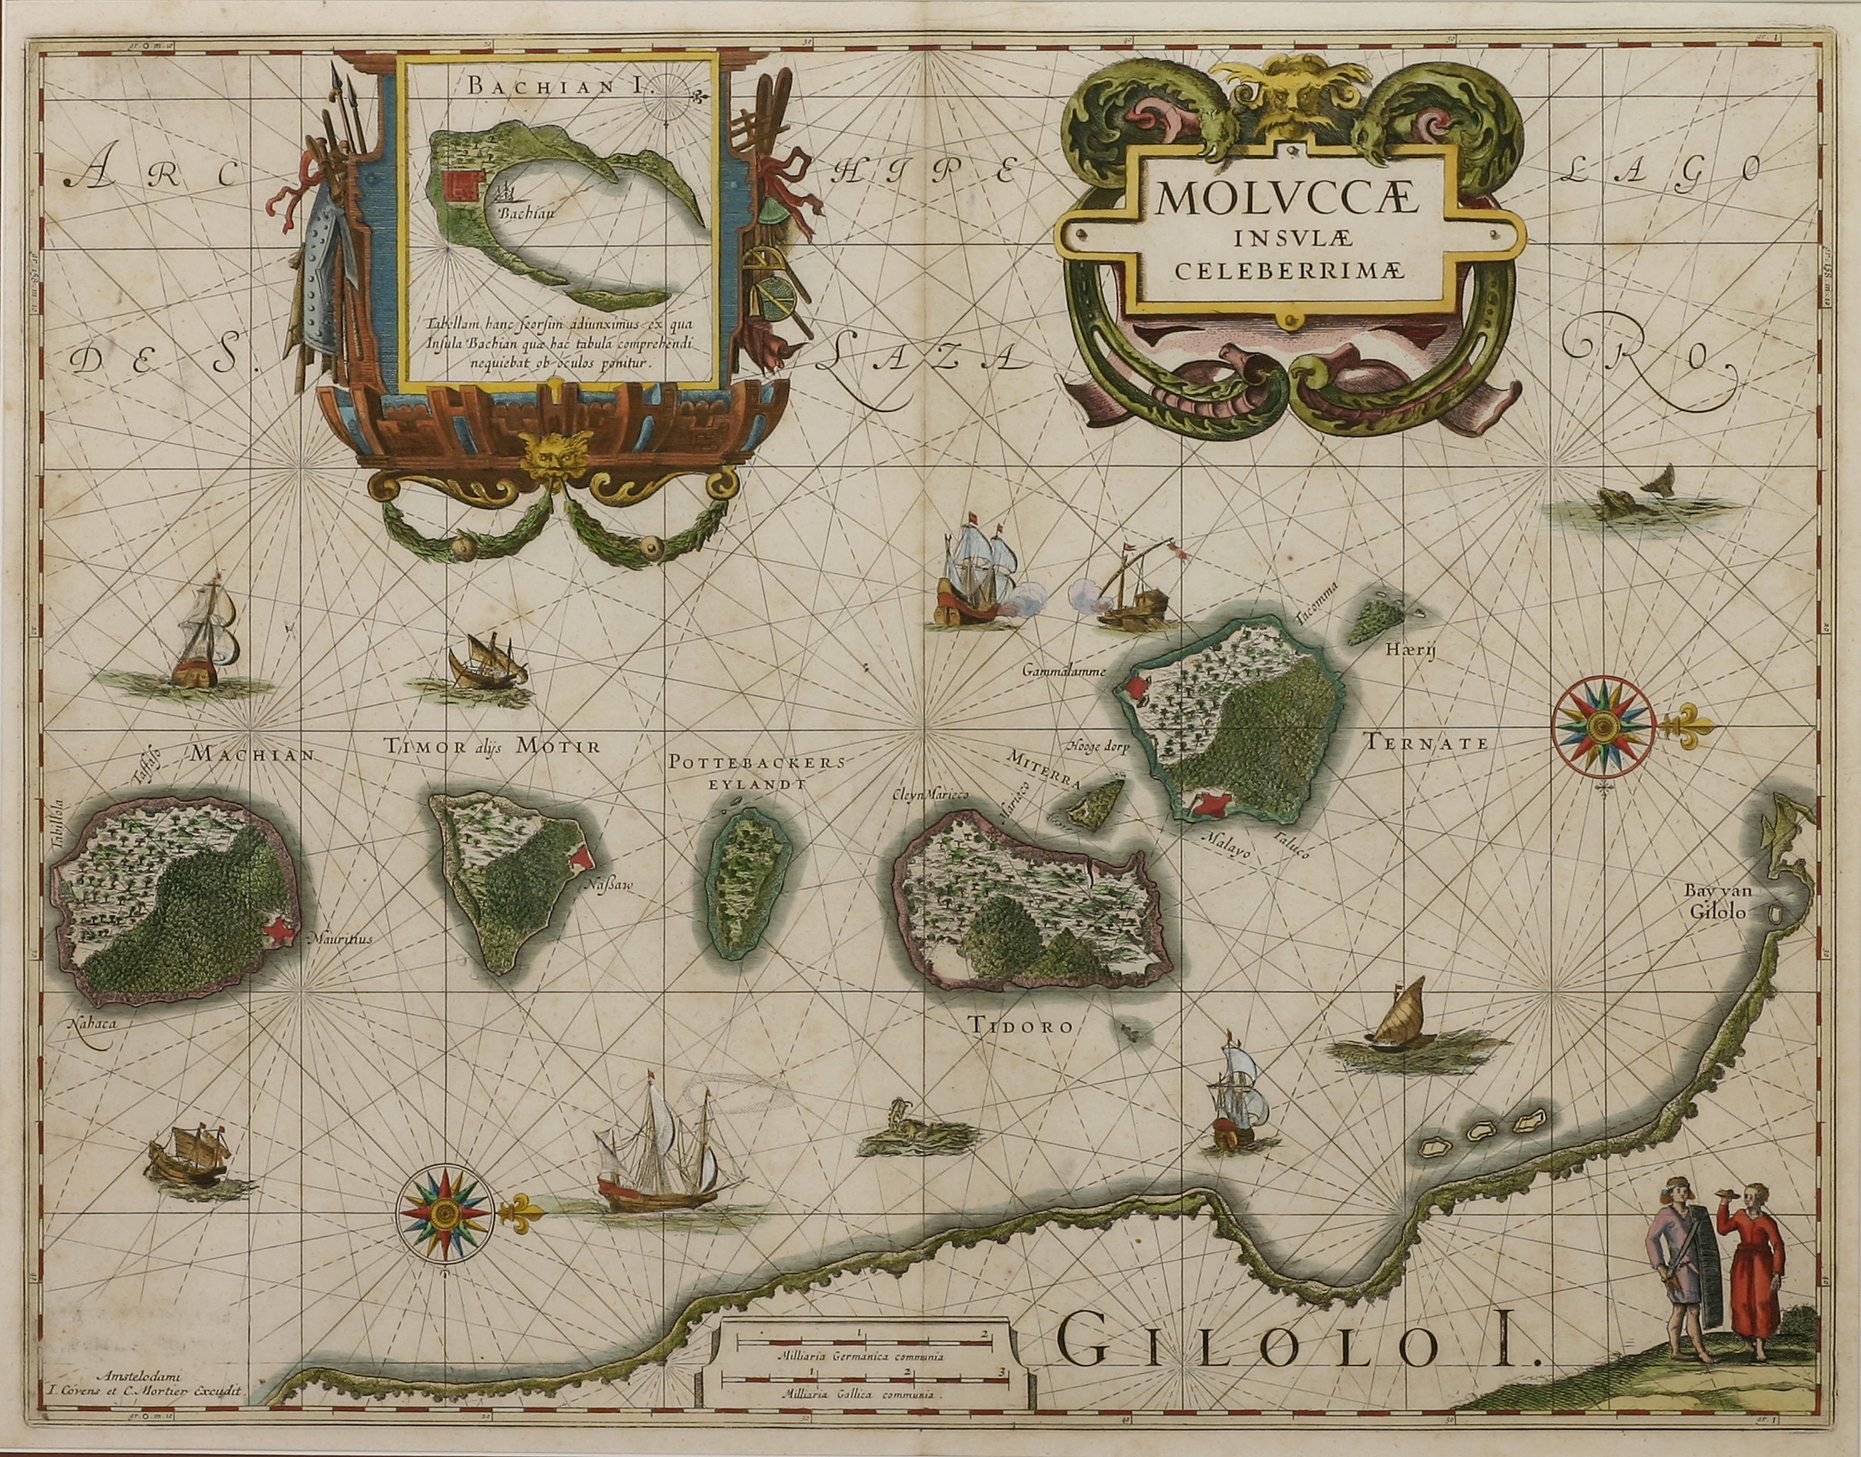 Moluccae Insulae Celeberrimae - Antique Print from 1631